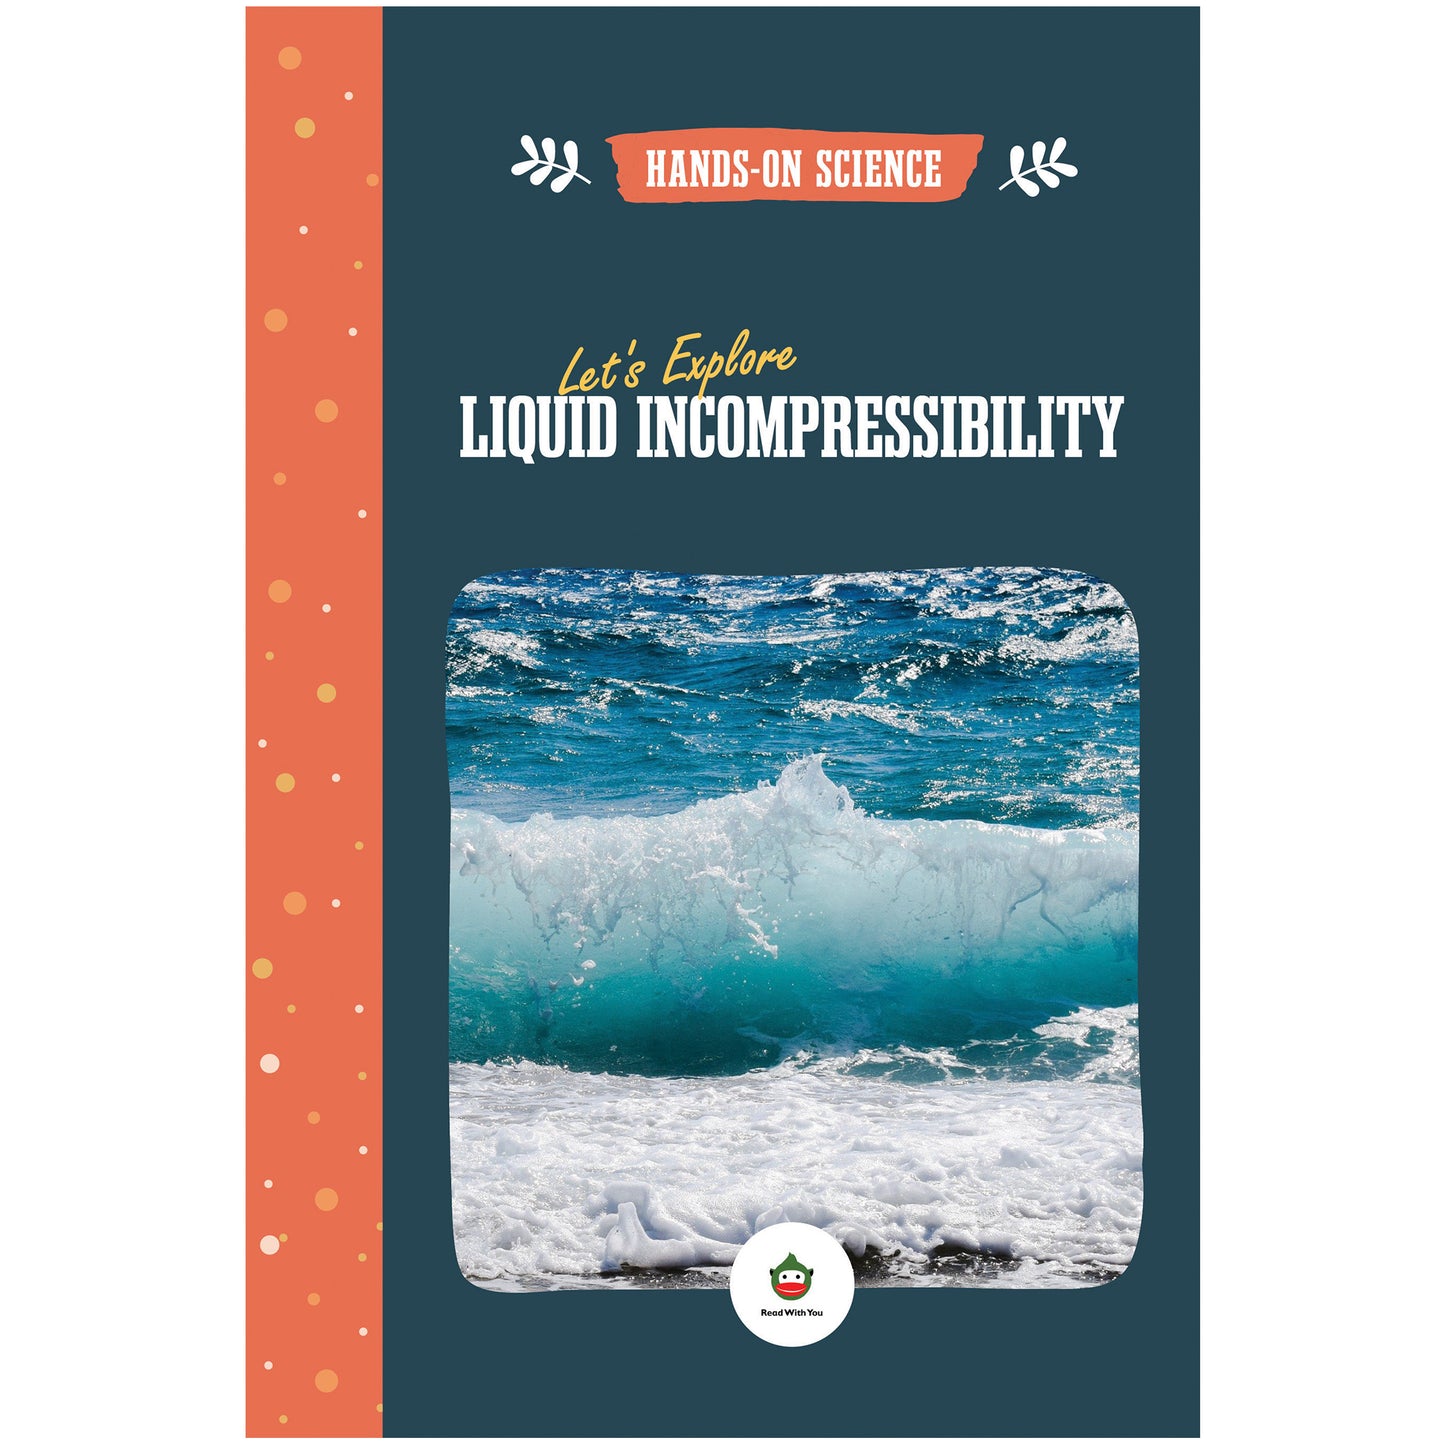 Let's Explore Liquid Incompressibility